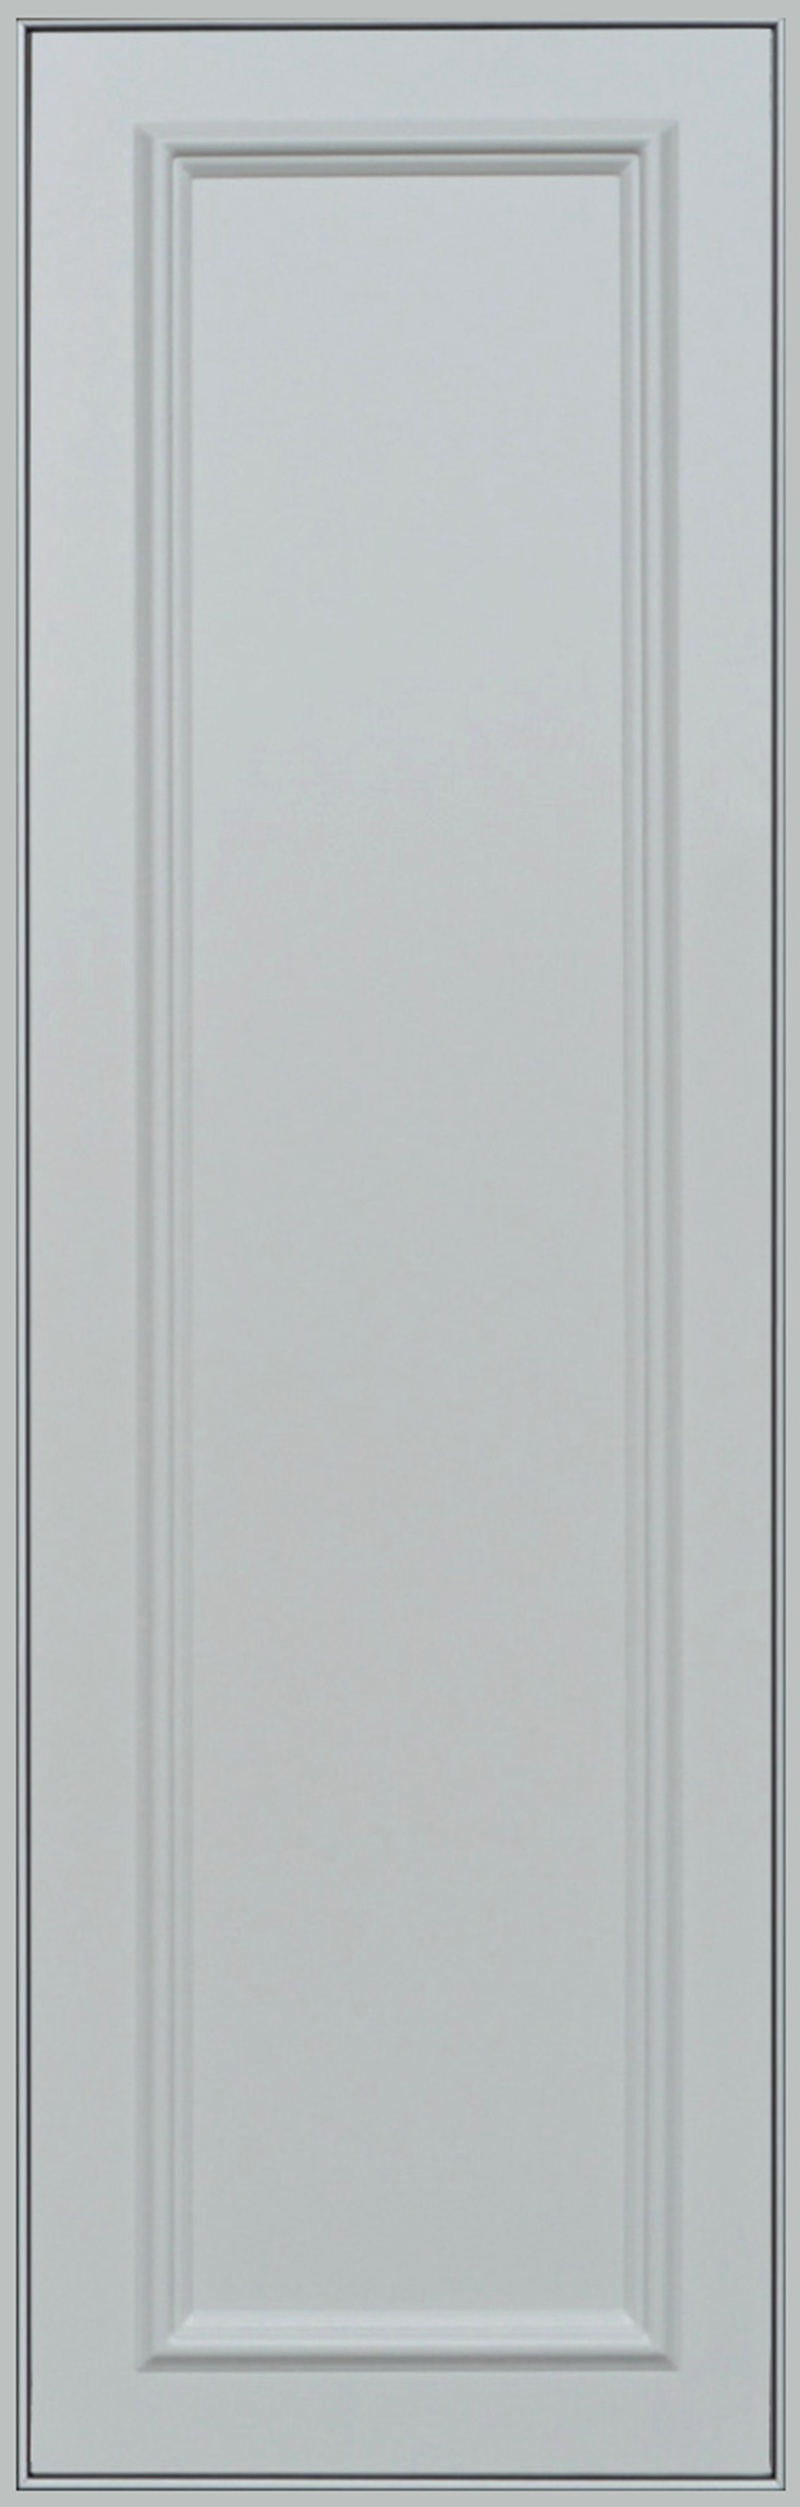 梵雅600x1800-全屋整装客厅吊顶抗菌吊顶效果图